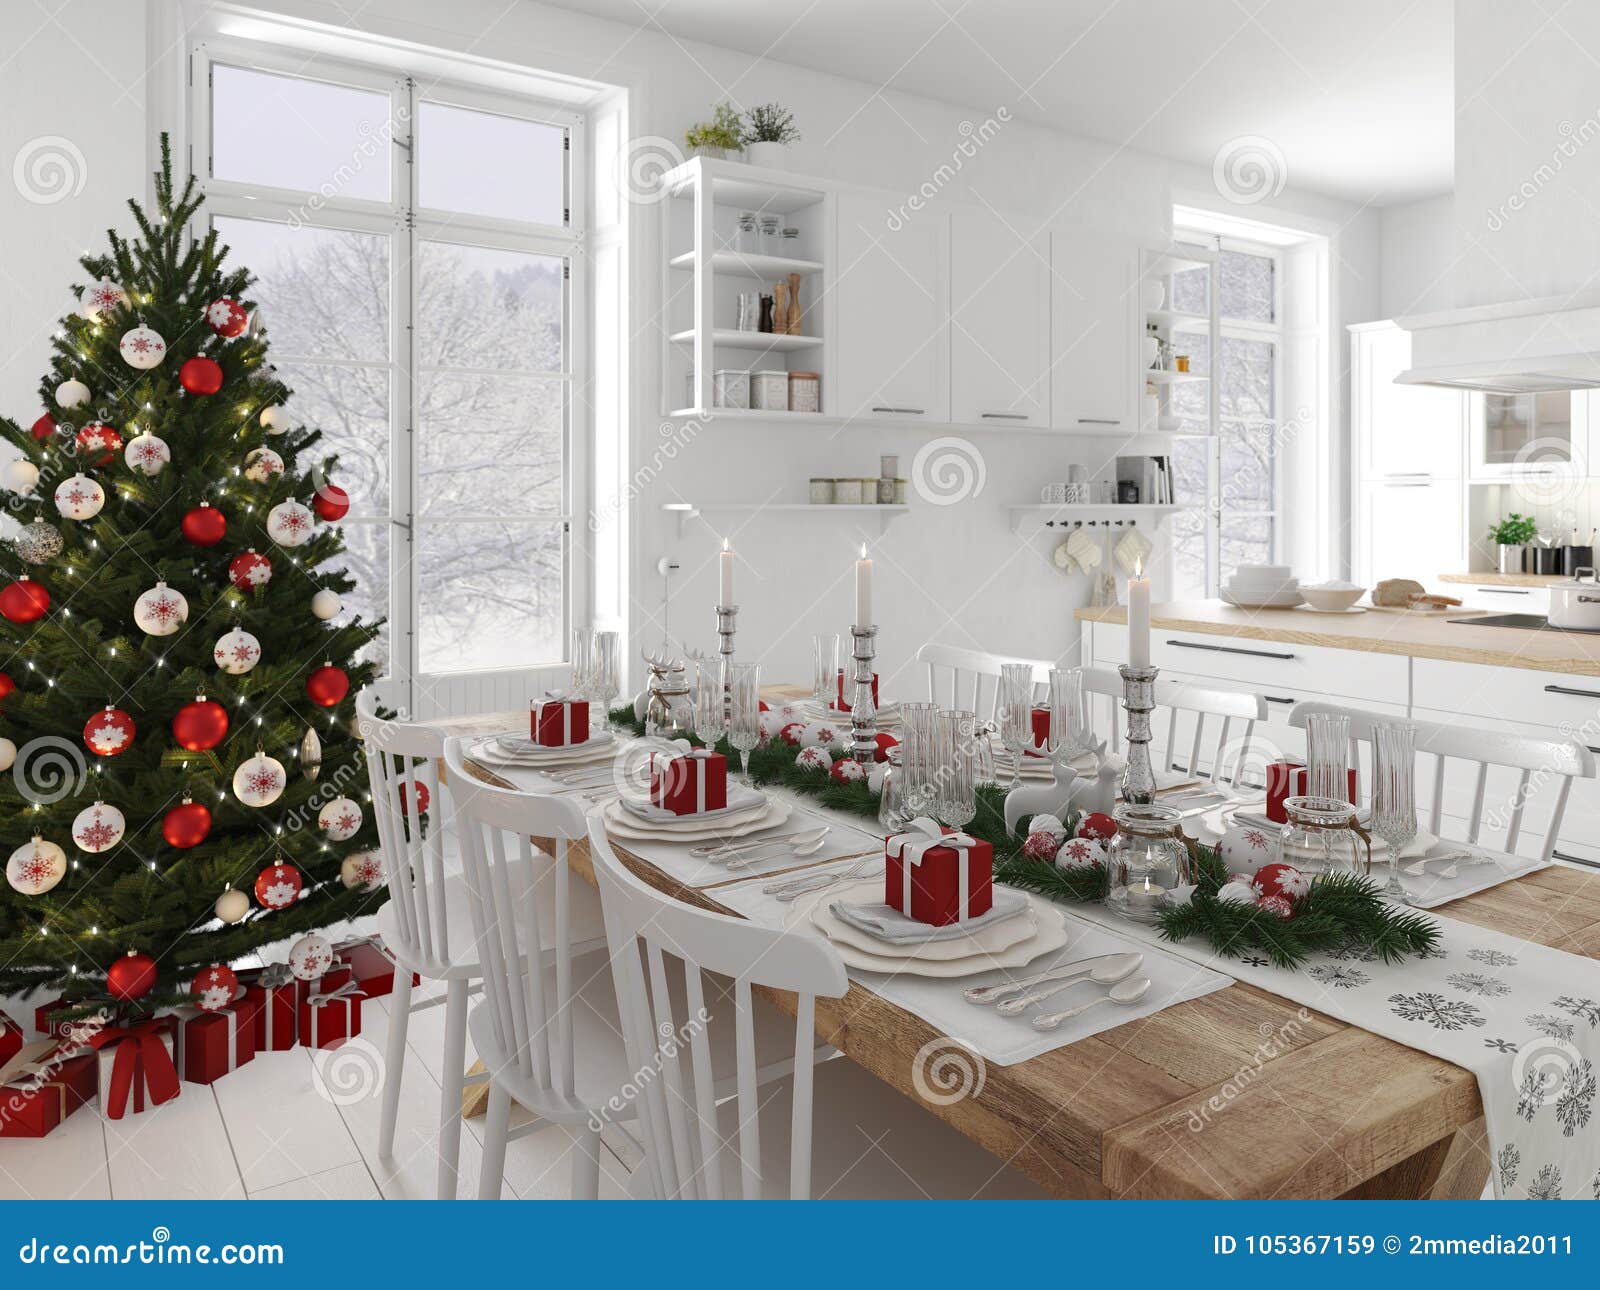 Cucina Natale.Cucina Nordica Con La Decorazione Di Natale Di Giorno Rappresentazione 3d Illustrazione Di Stock Illustrazione Di Luce Cosy 105367159